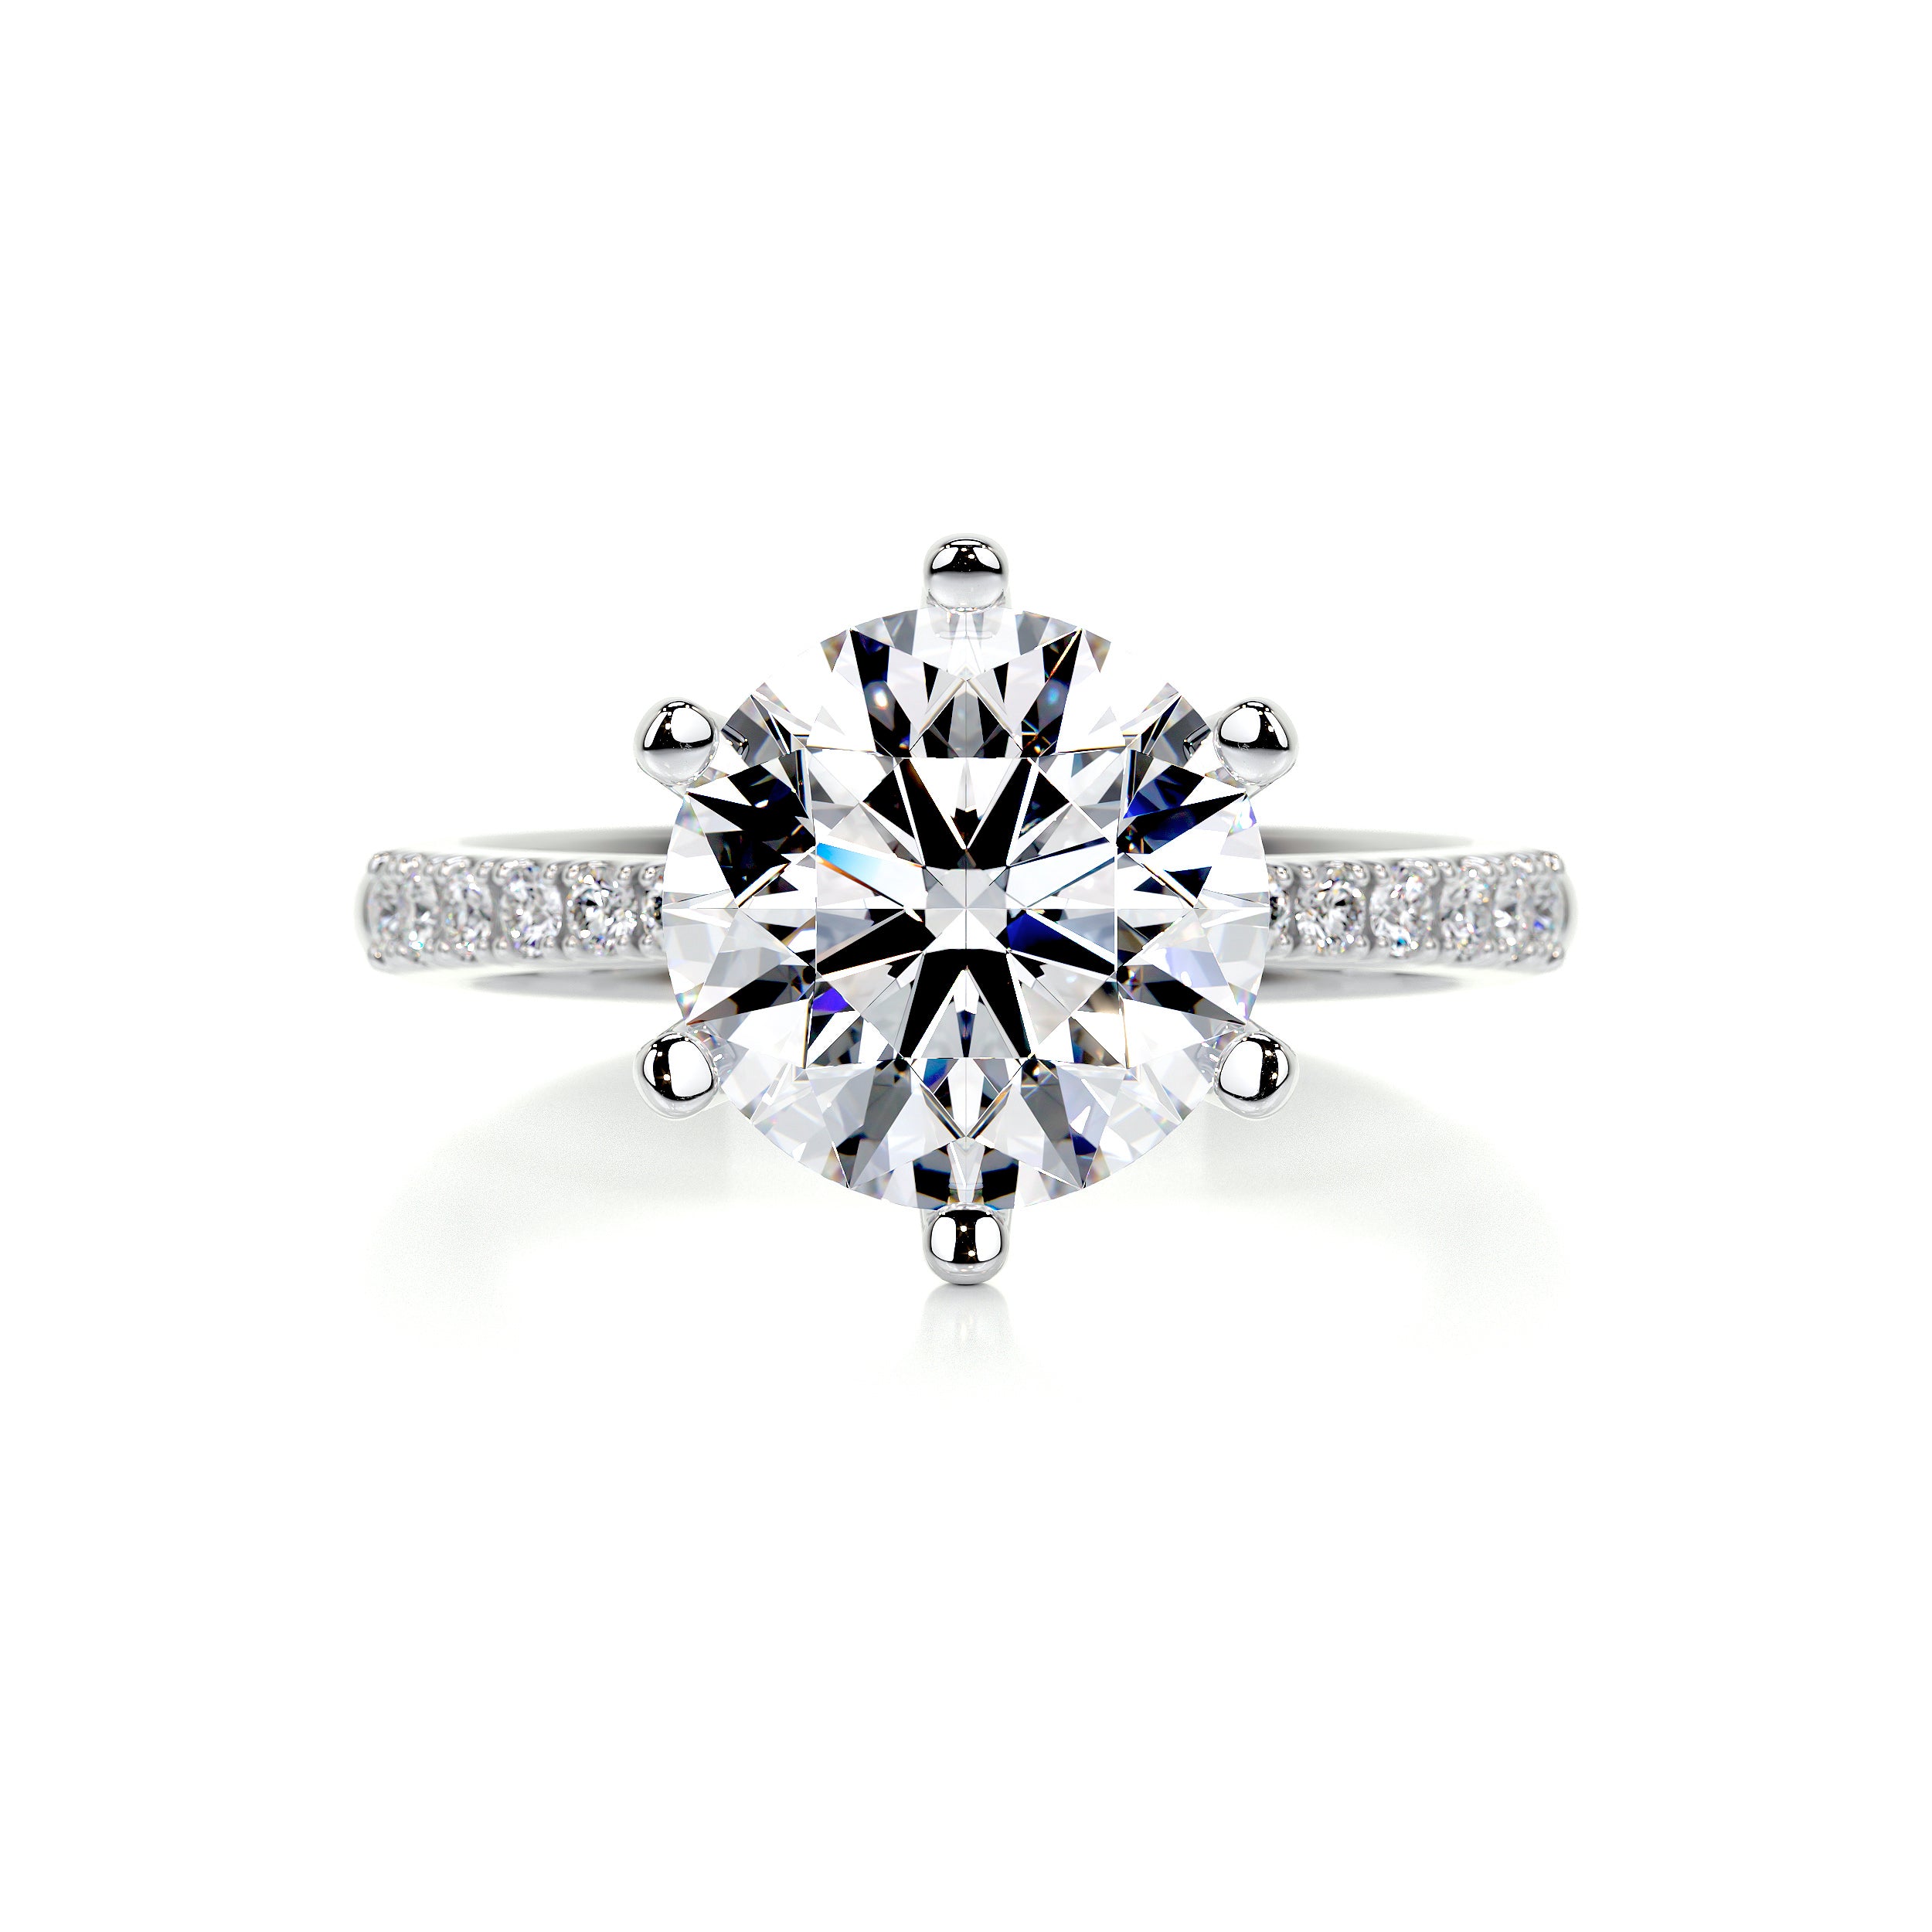 Samantha Diamond Engagement Ring   (3.15 Carat) -14K White Gold